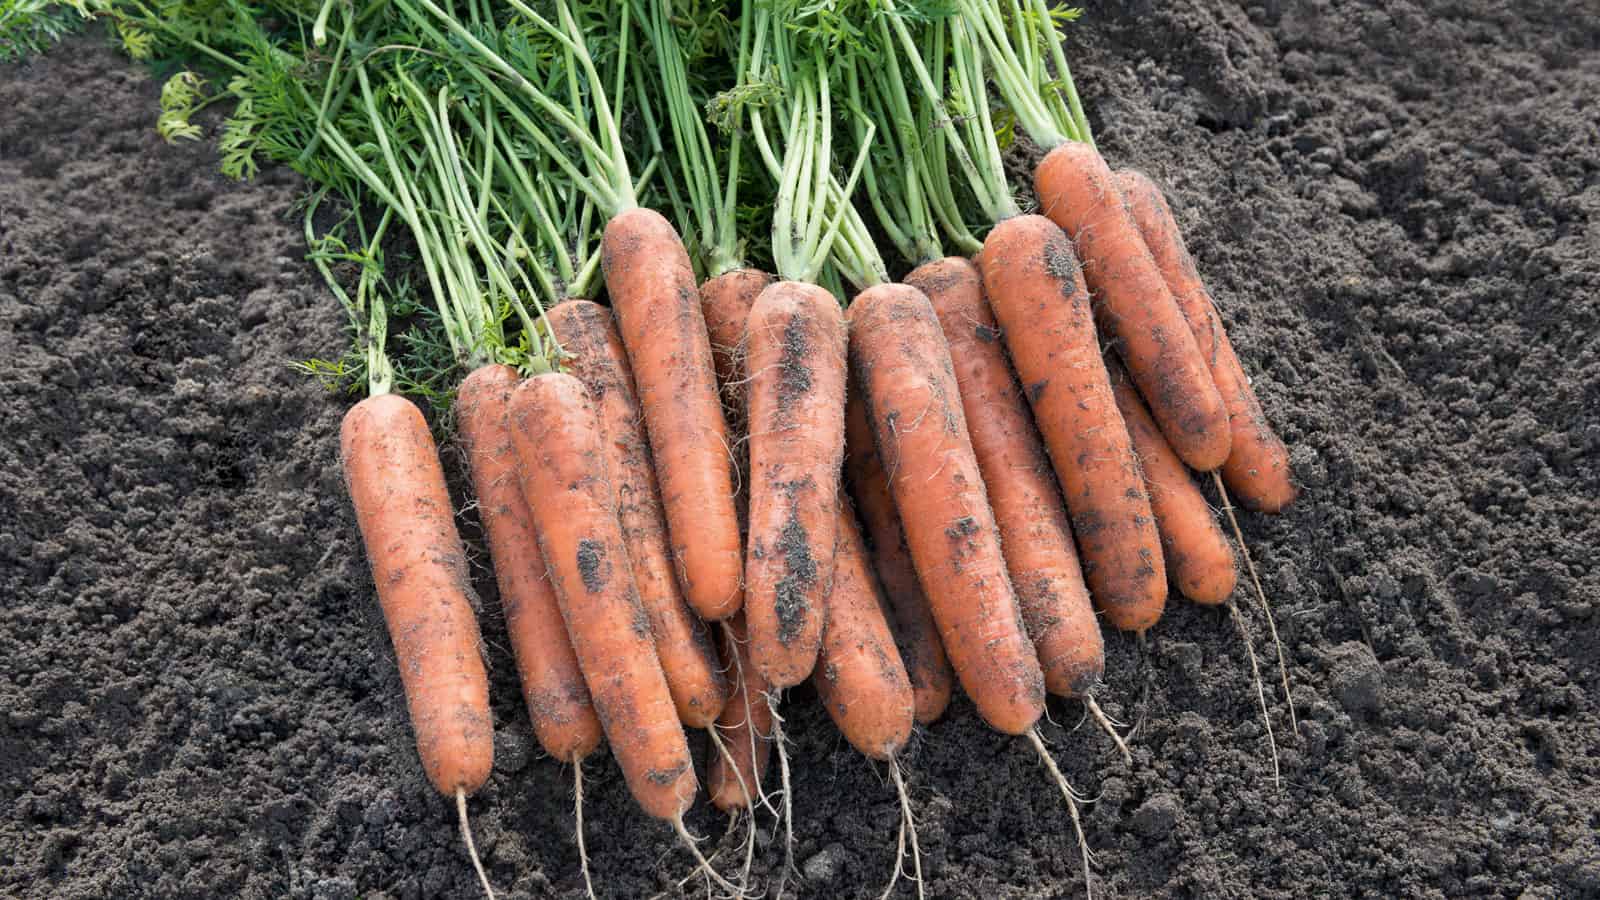 Описание сорта моркови абако и выращивание из семян